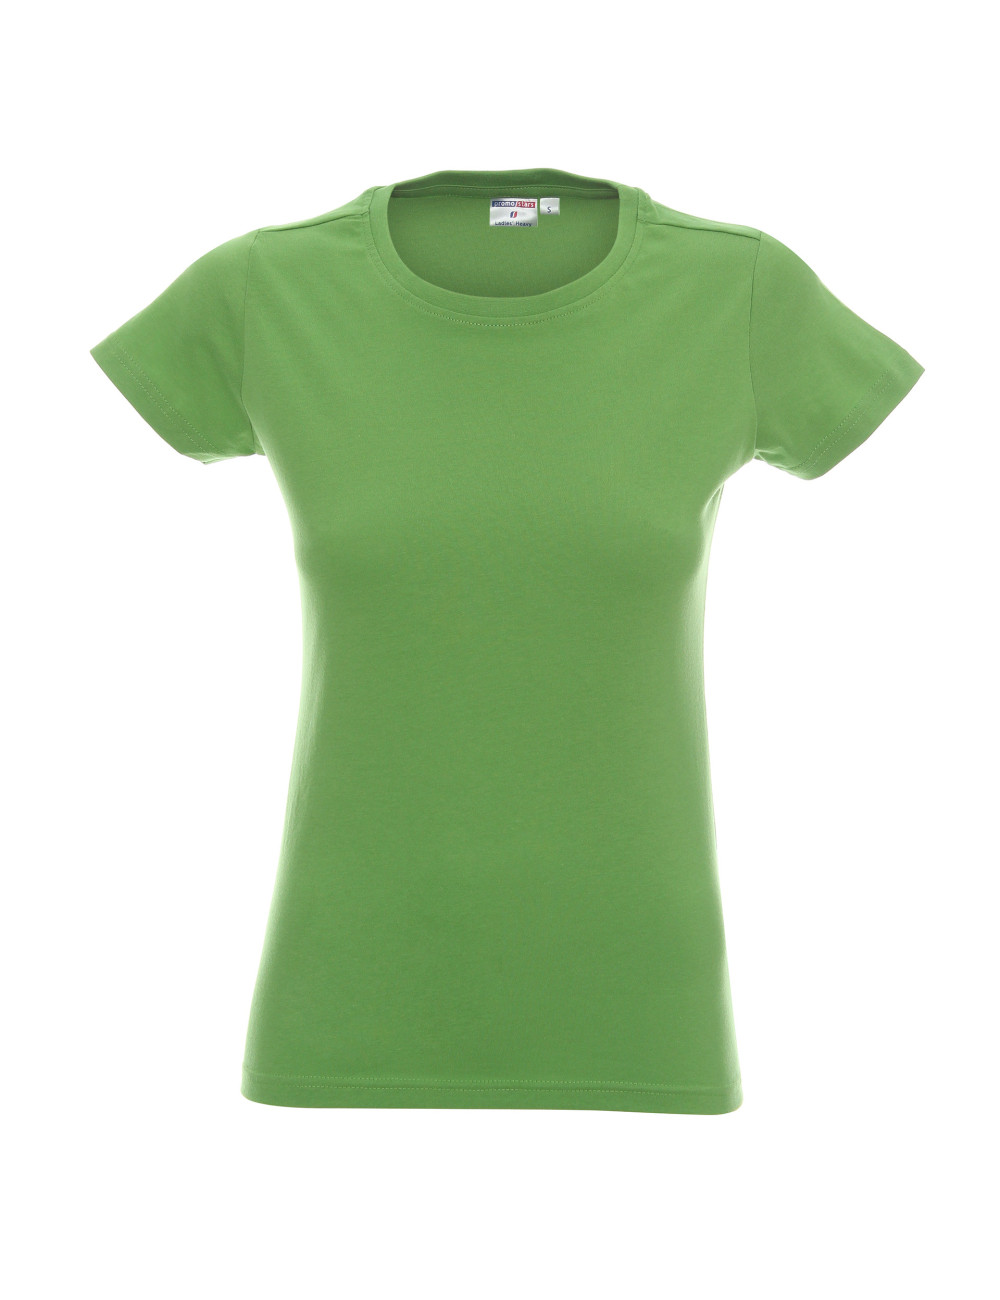 Ladies' heavy koszulka damska jasny zielony Promostars